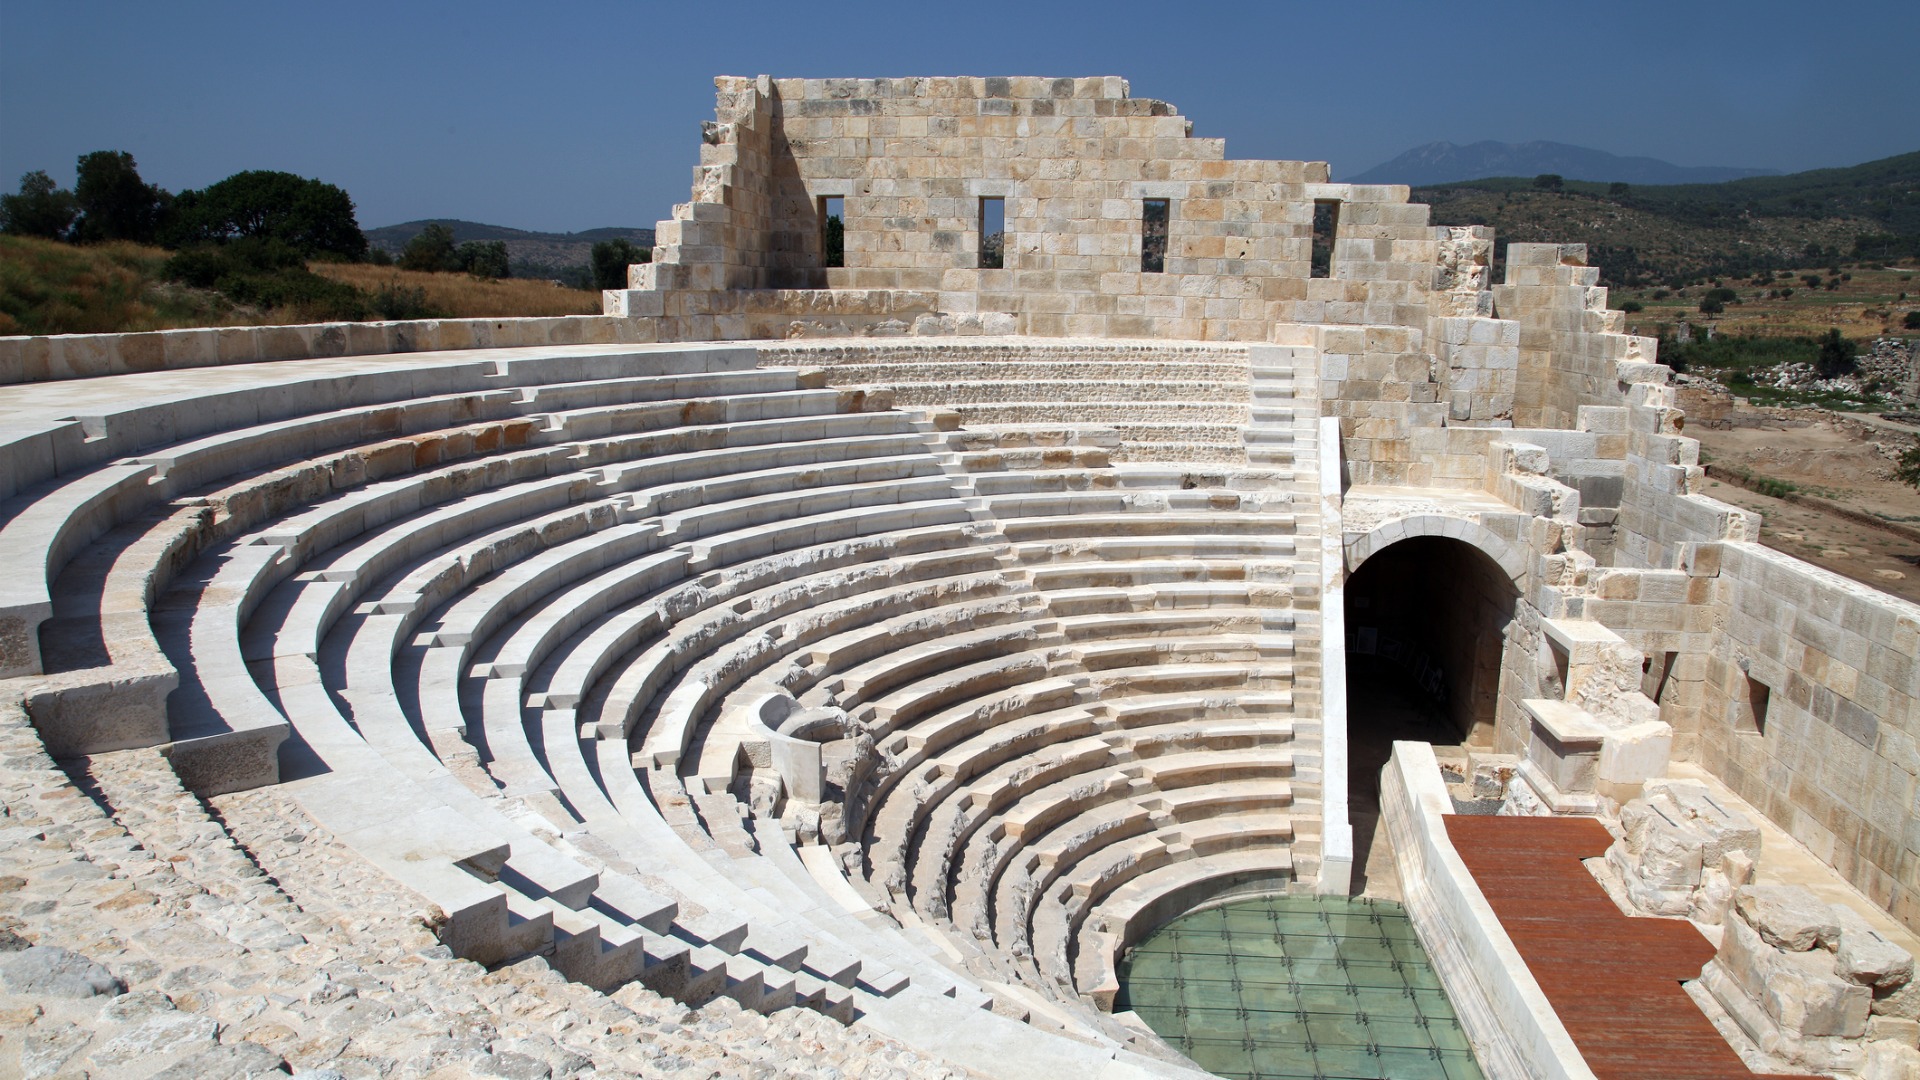 Esta imagen muestra el teatro antiguo bien conservado en Patara, Turquía.